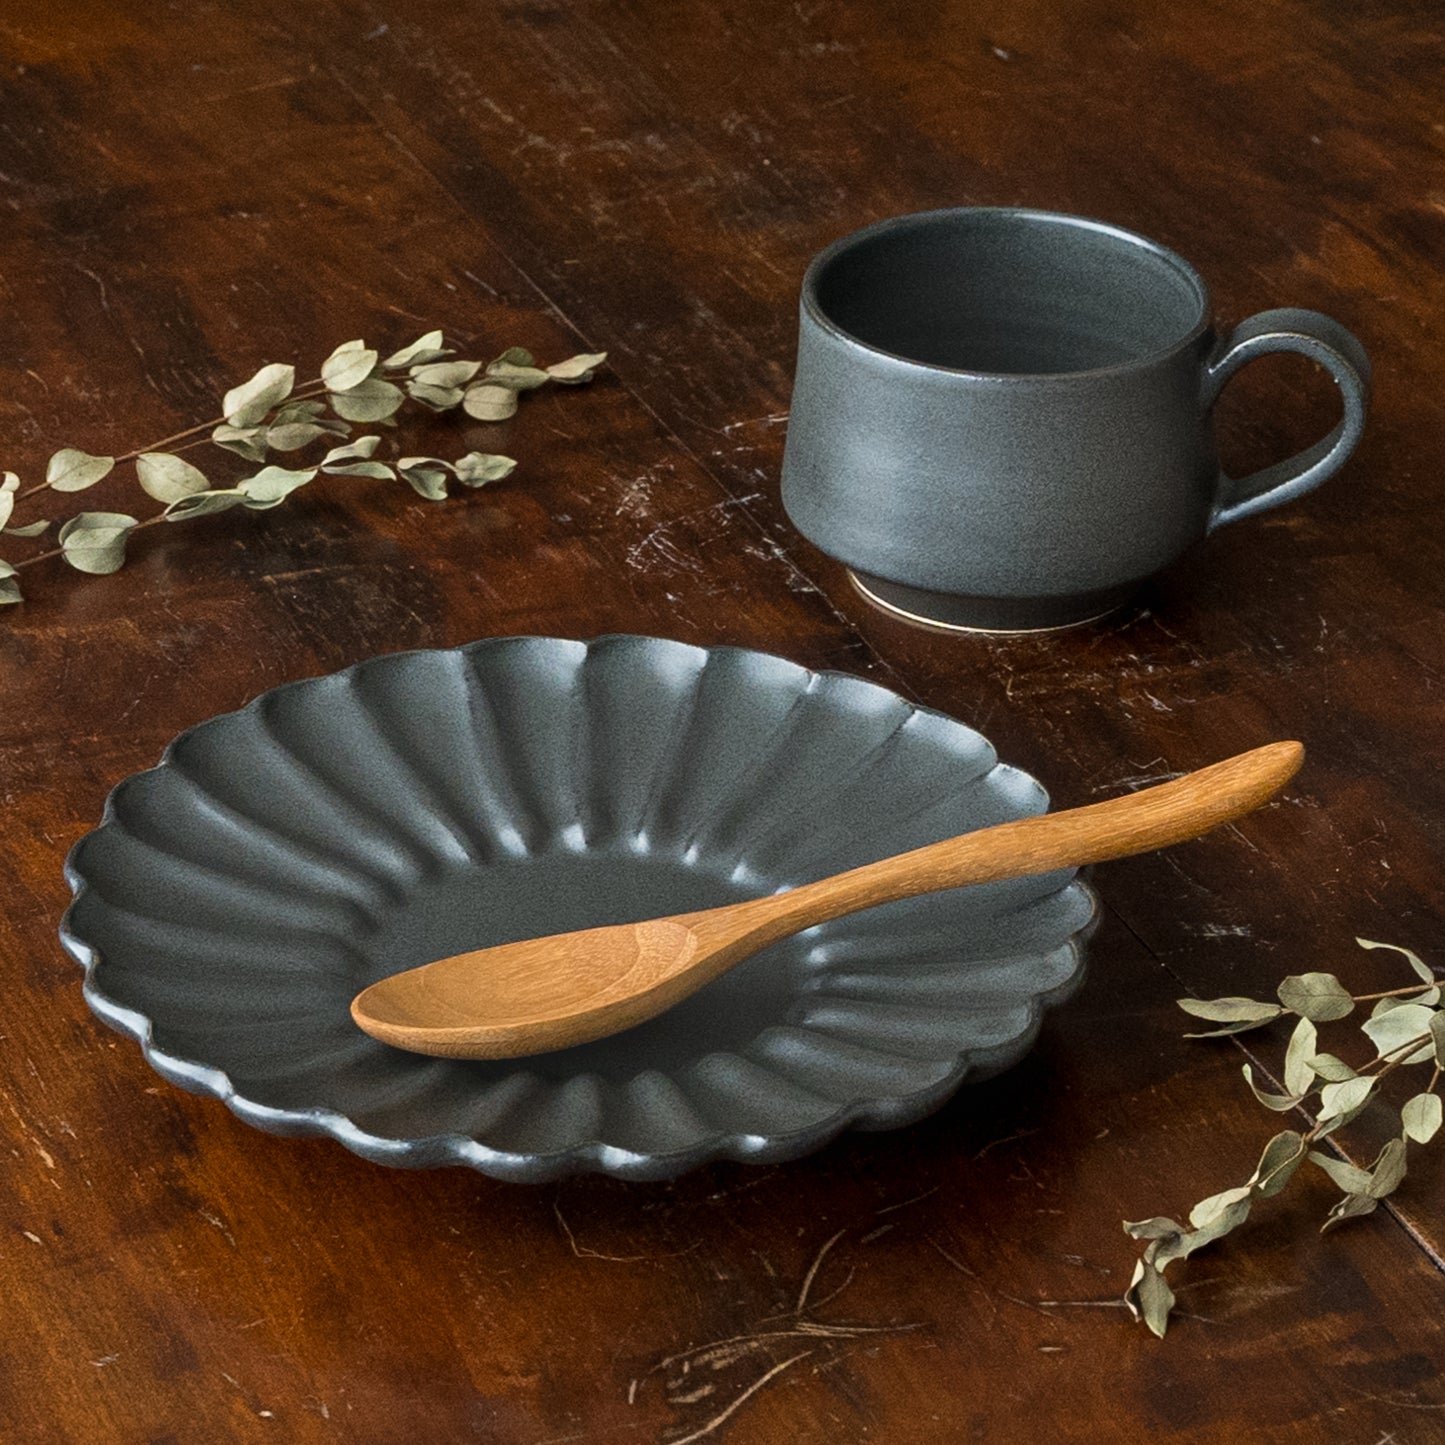 食卓を素敵に彩ってくれるyoshida potteryの輪花皿とコーヒーカップ